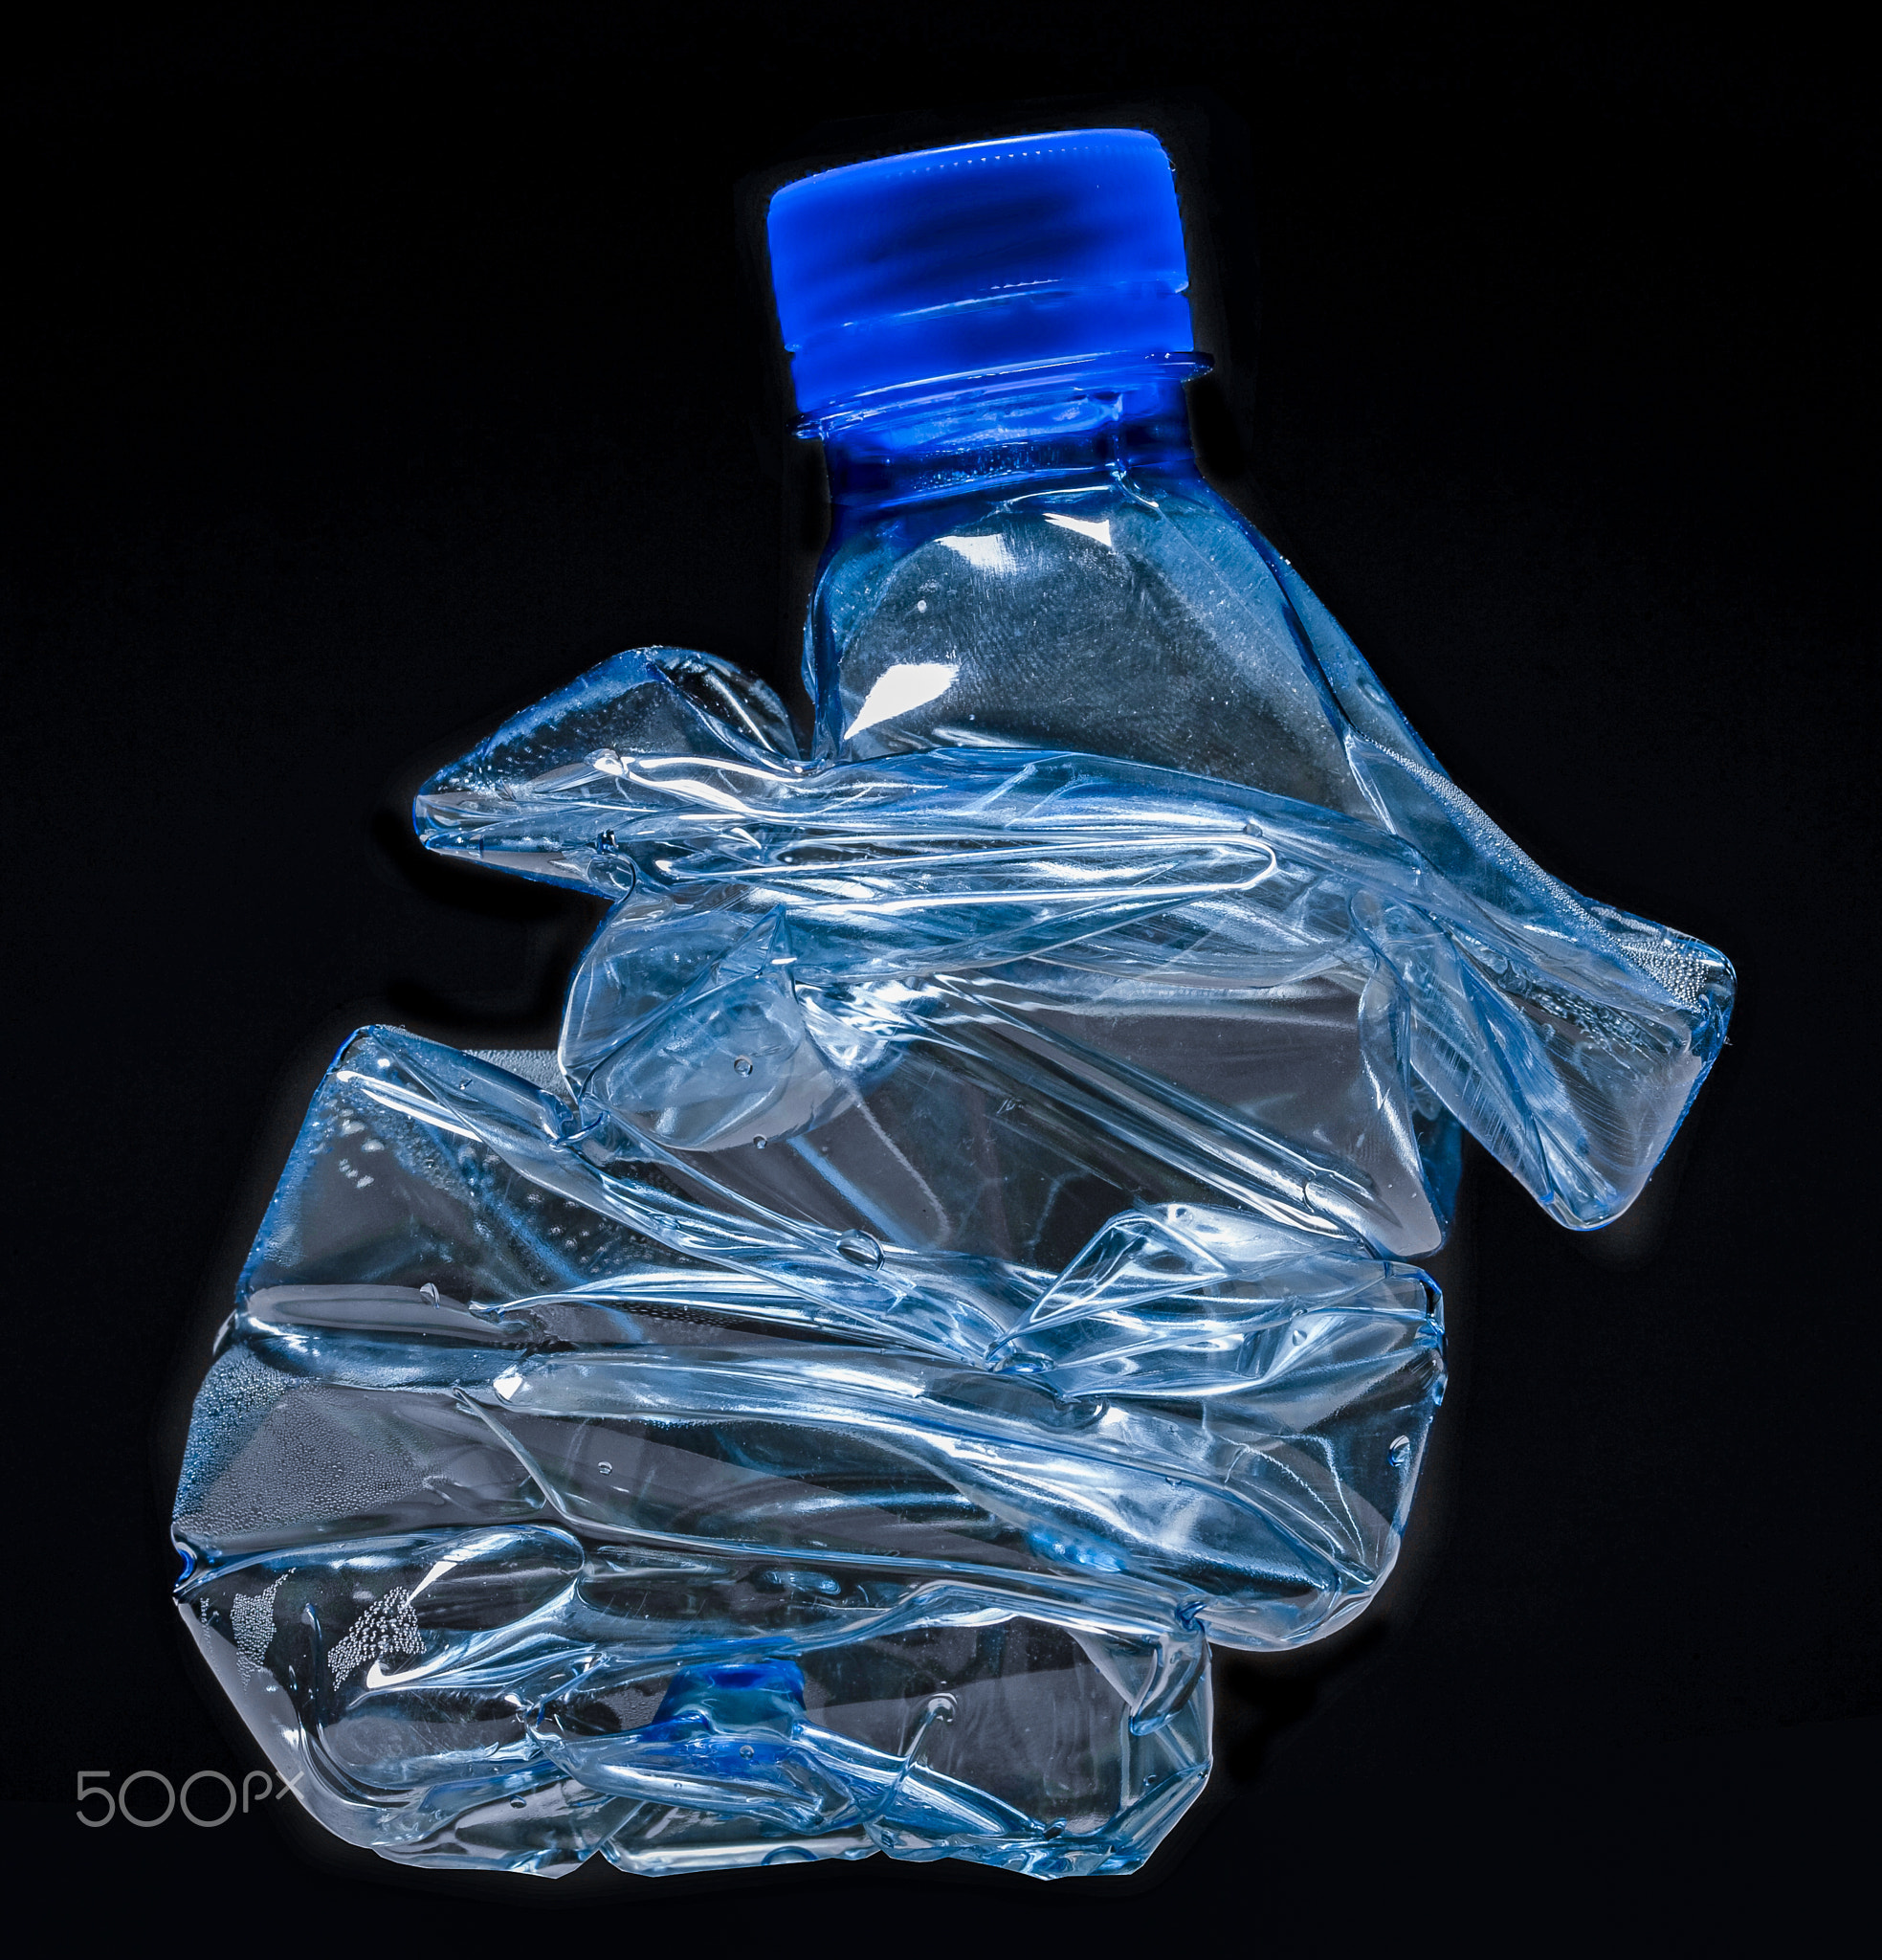 recyclage bouteille plastique fond noir bleu graphisme tri dechet ecologie artistique...